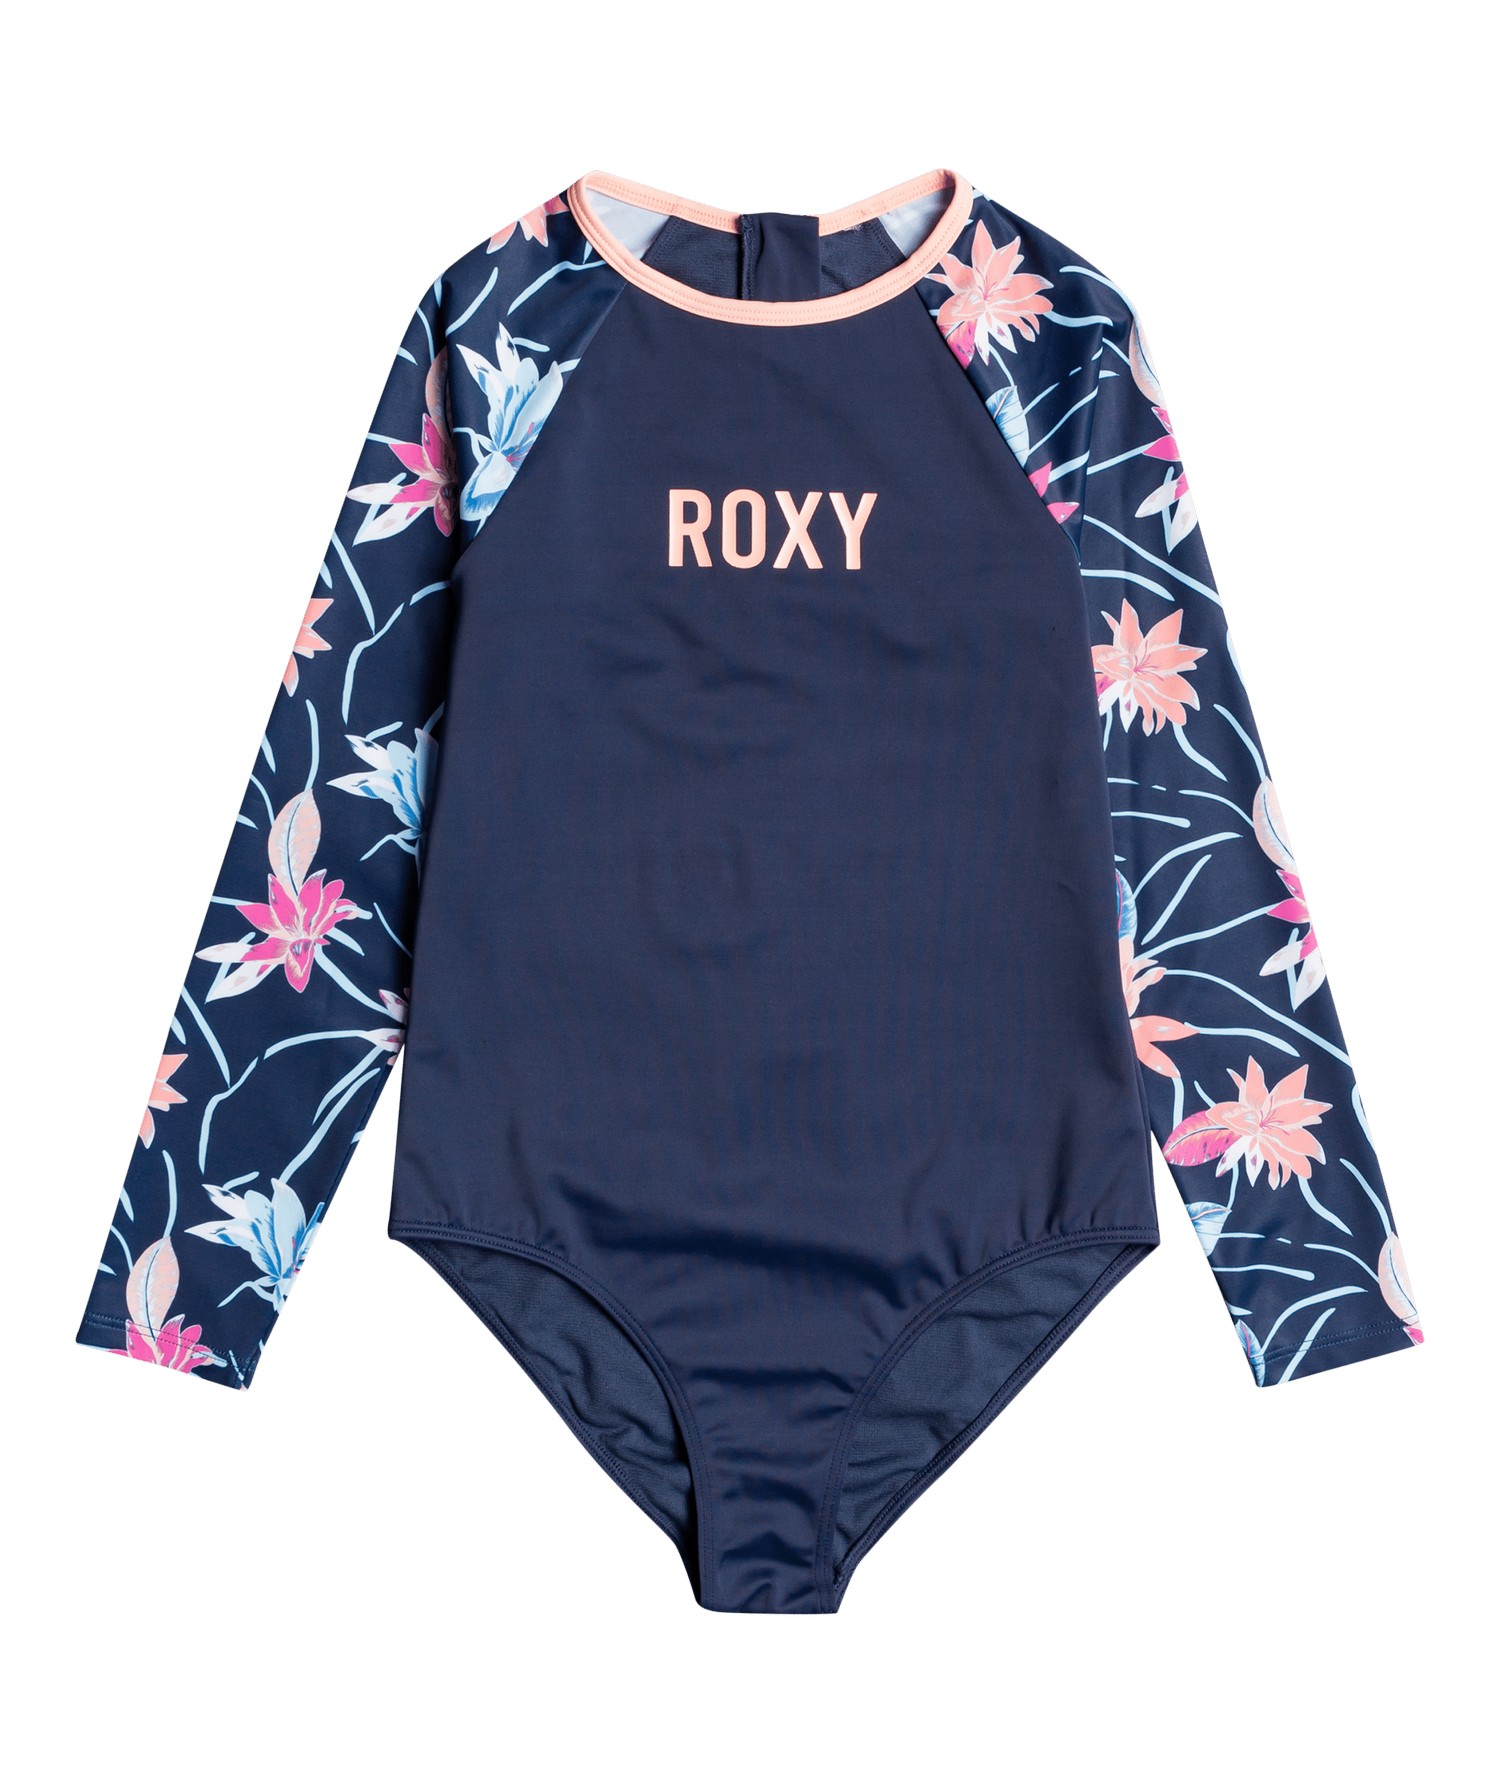 Spingsuit Lycra Roxy Mädchen Sonnenschutz Badeanzug Schwimmanzug rosa 4 Jahre 